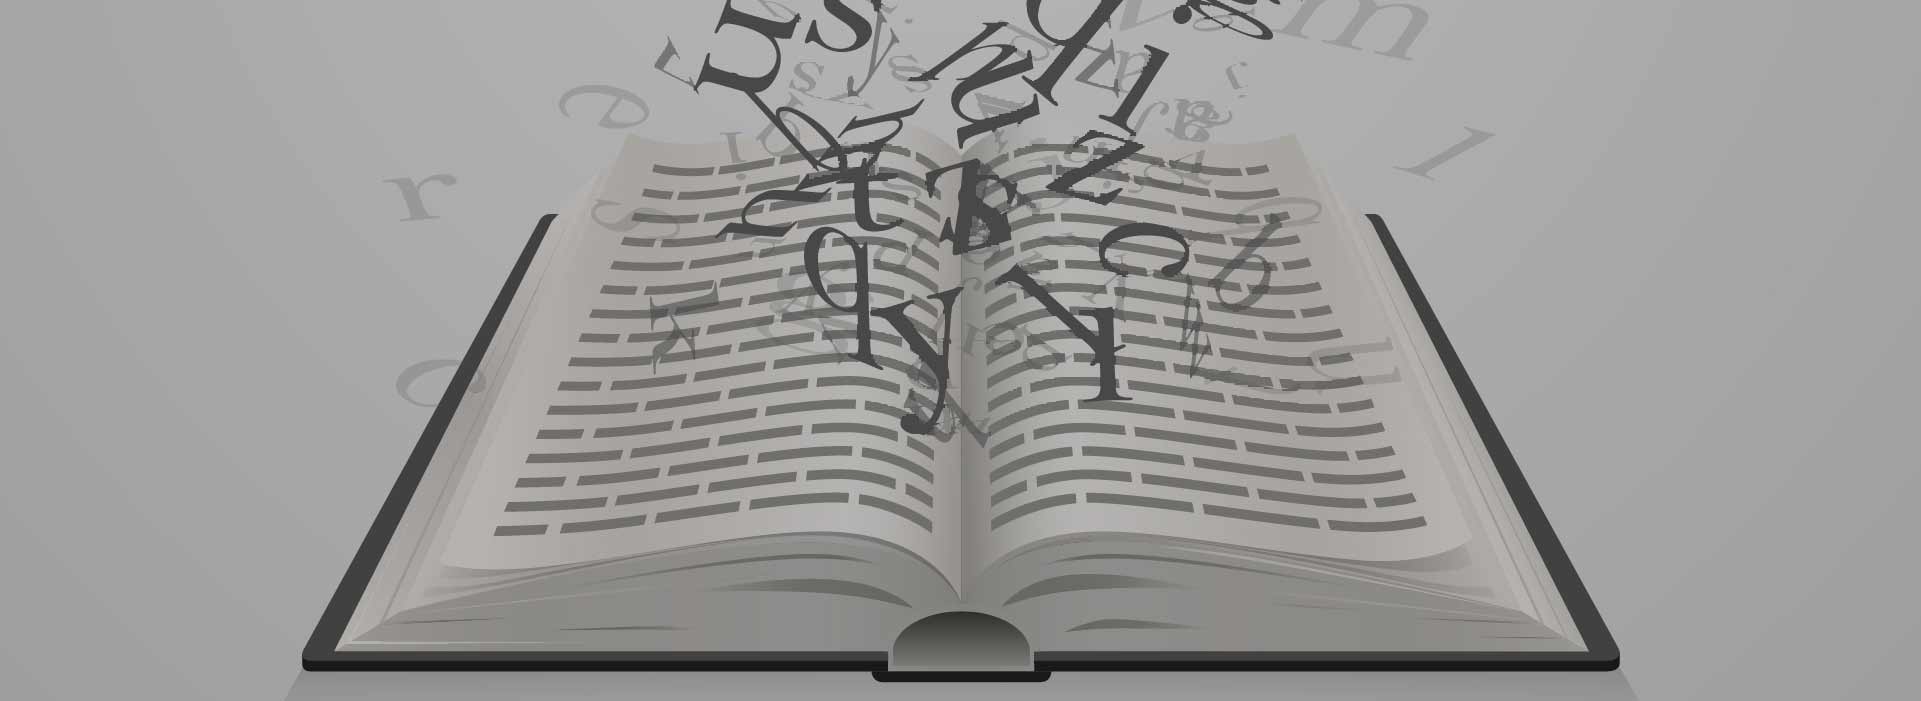 Imagem de um livro com letras saindo e flutuando de dentro dele